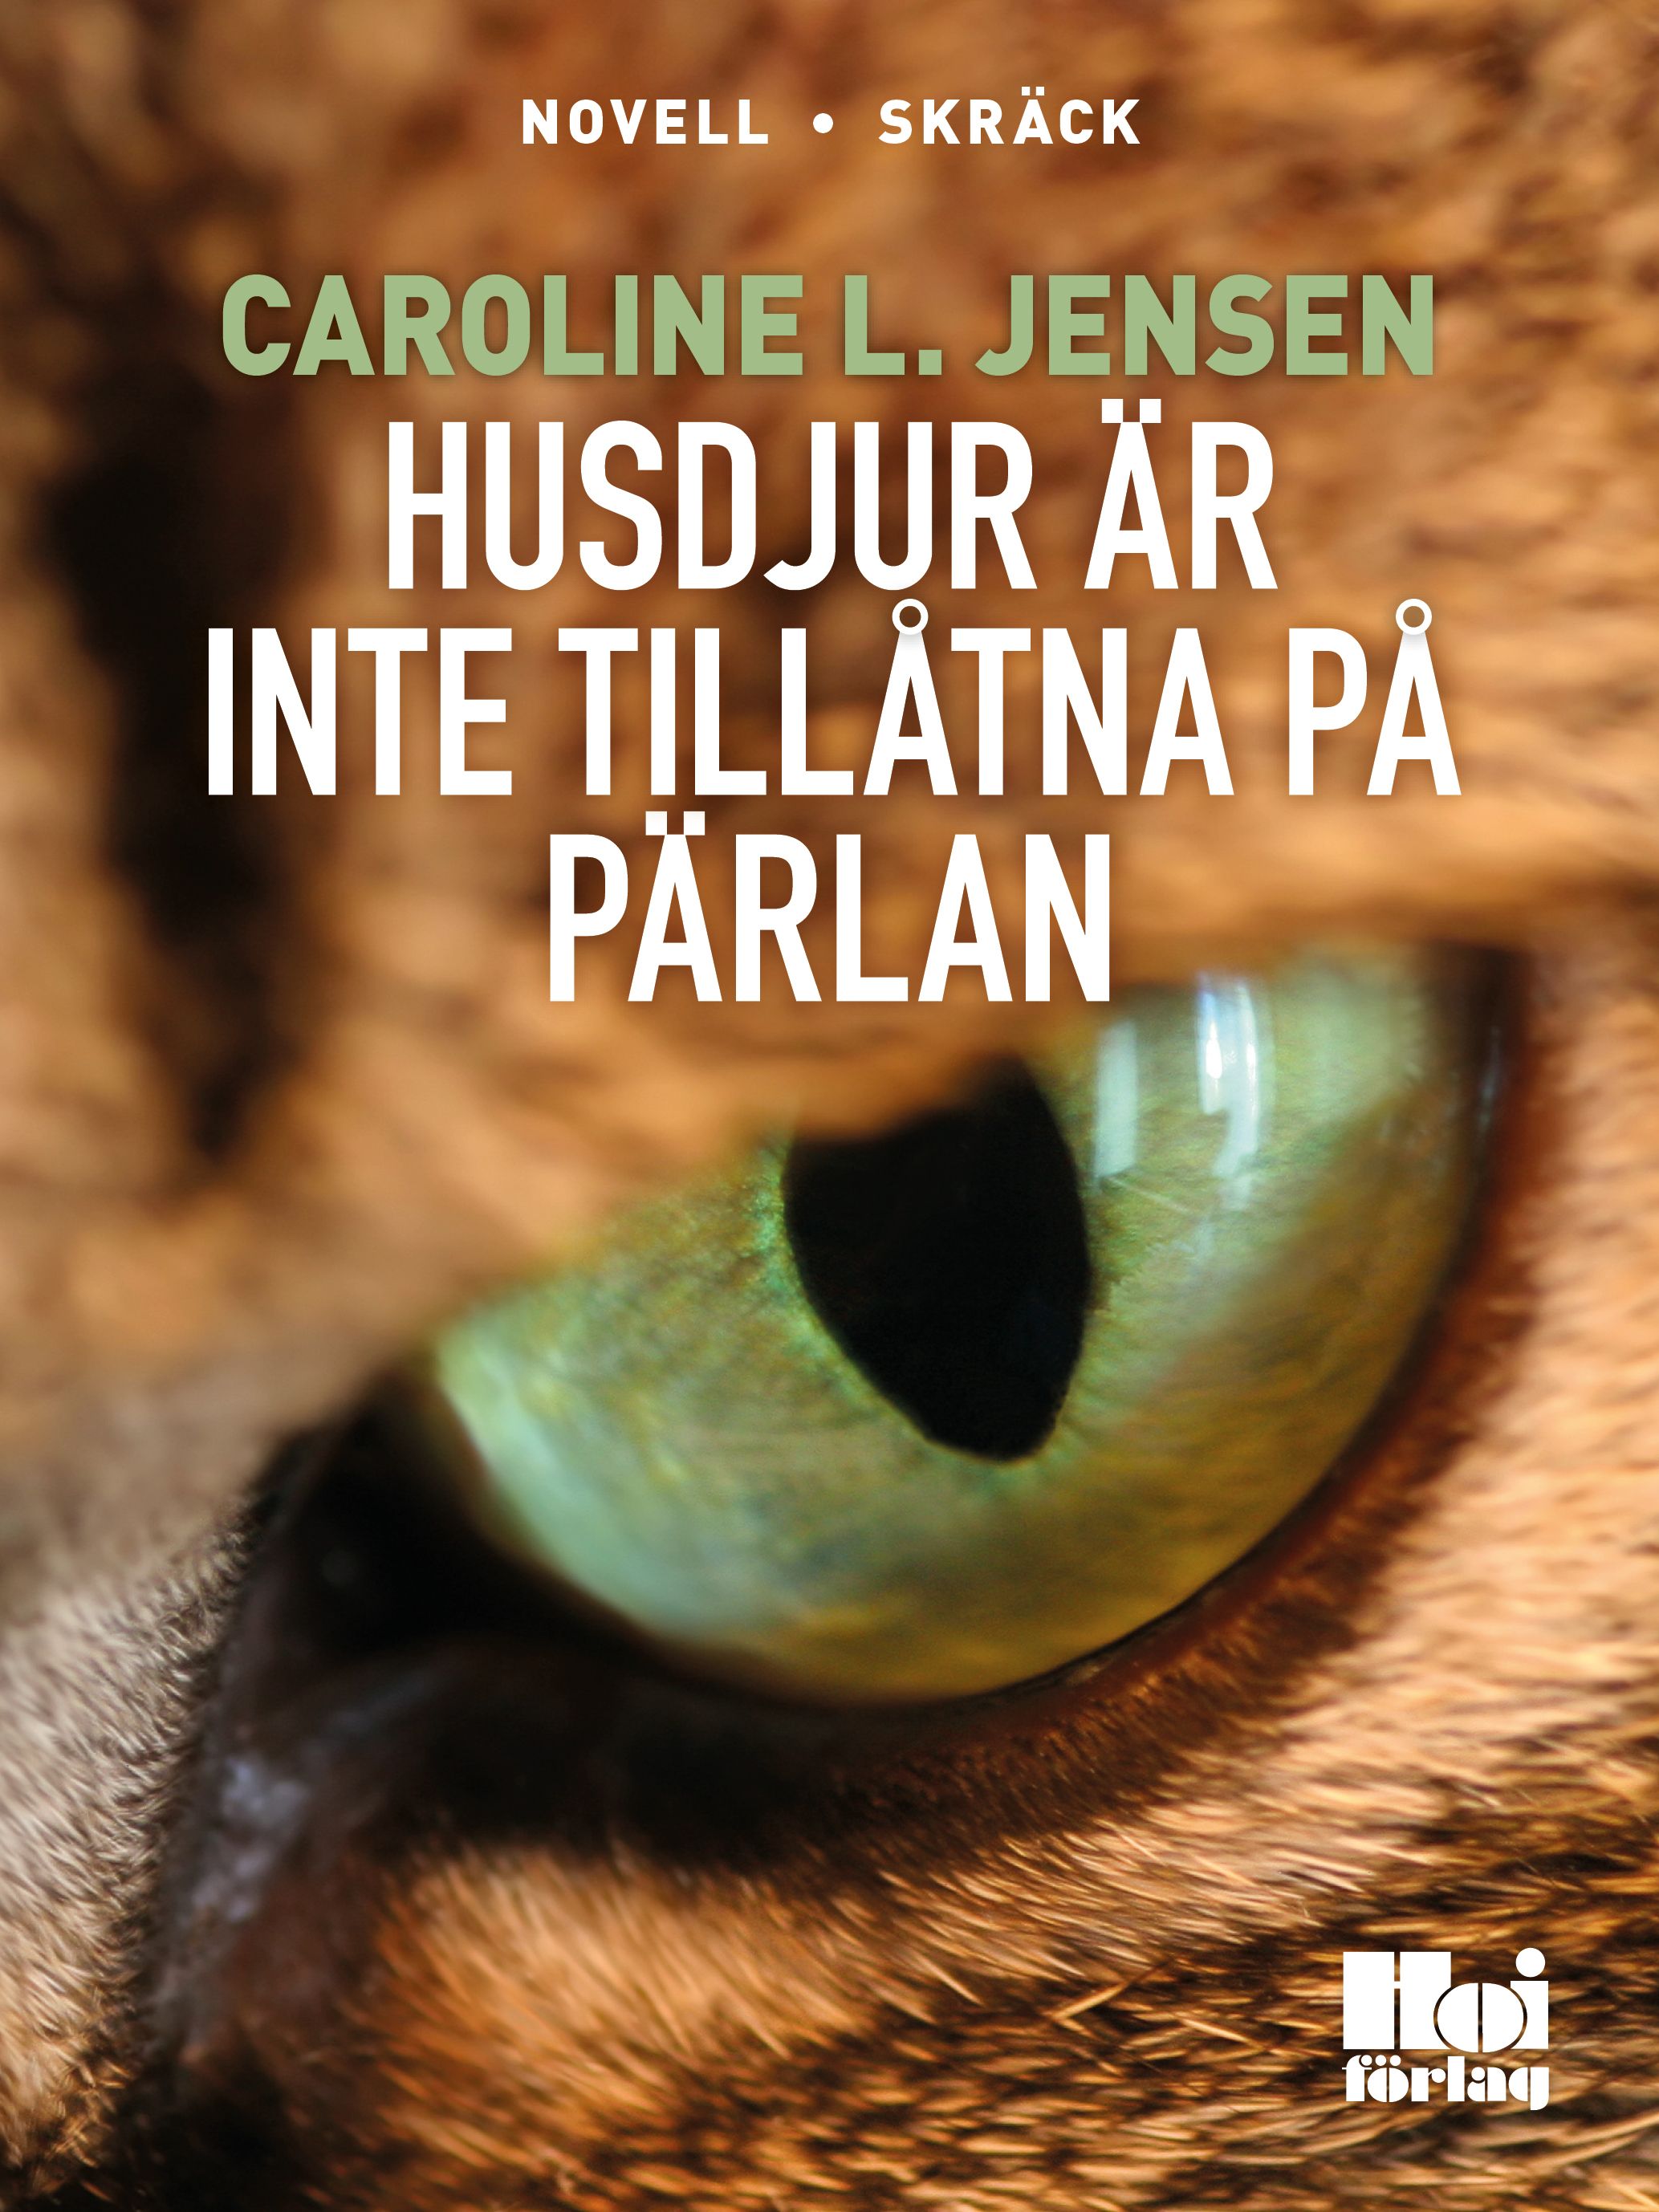 Husdjur är inte tillåtna på Pärlan, e-bok av Caroline L Jensen